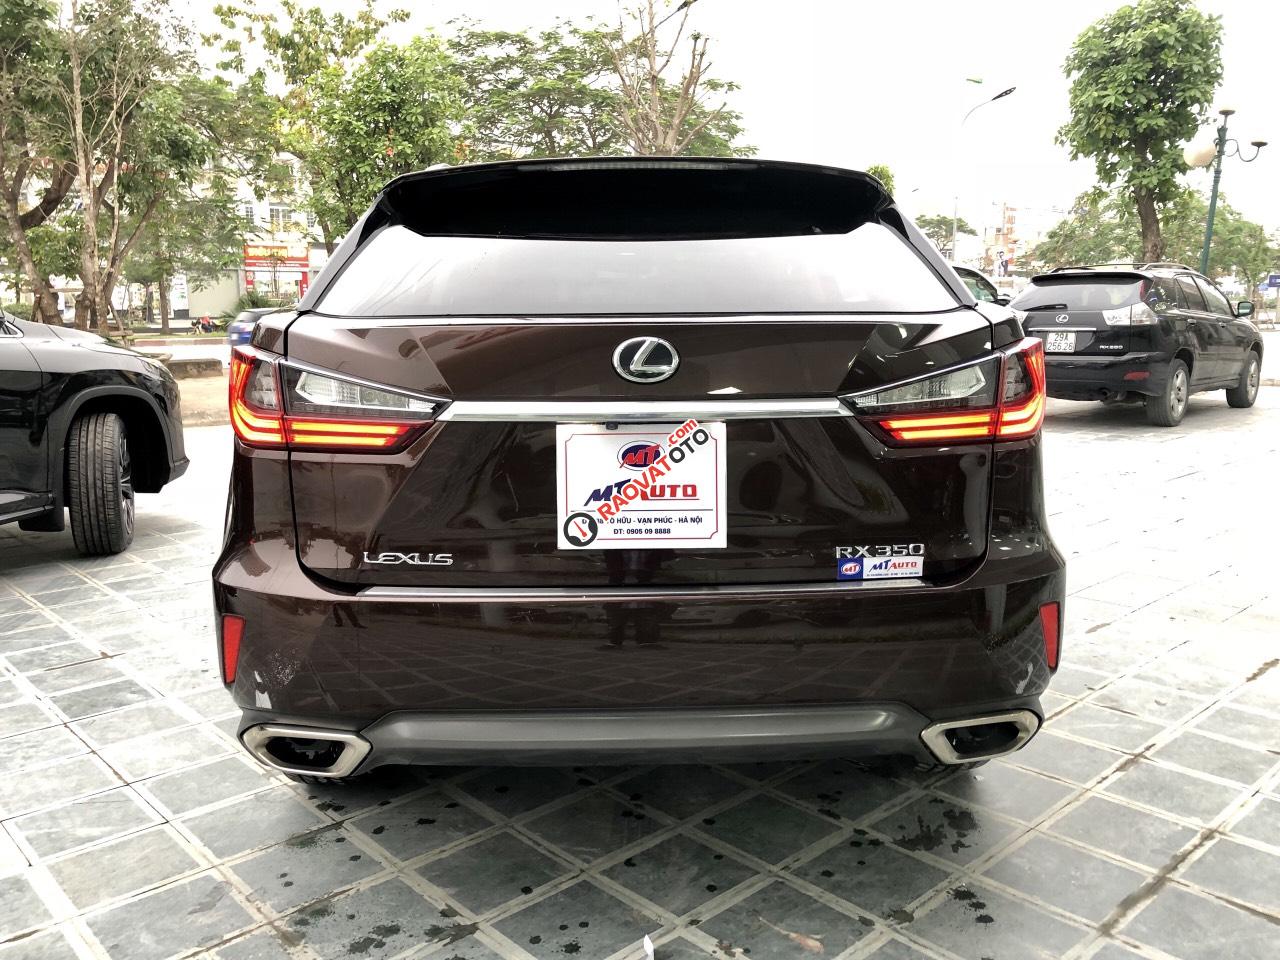 Bán Lexus RX 350 đời 2017 Hà Nội, màu nâu, xe lướt chất -17